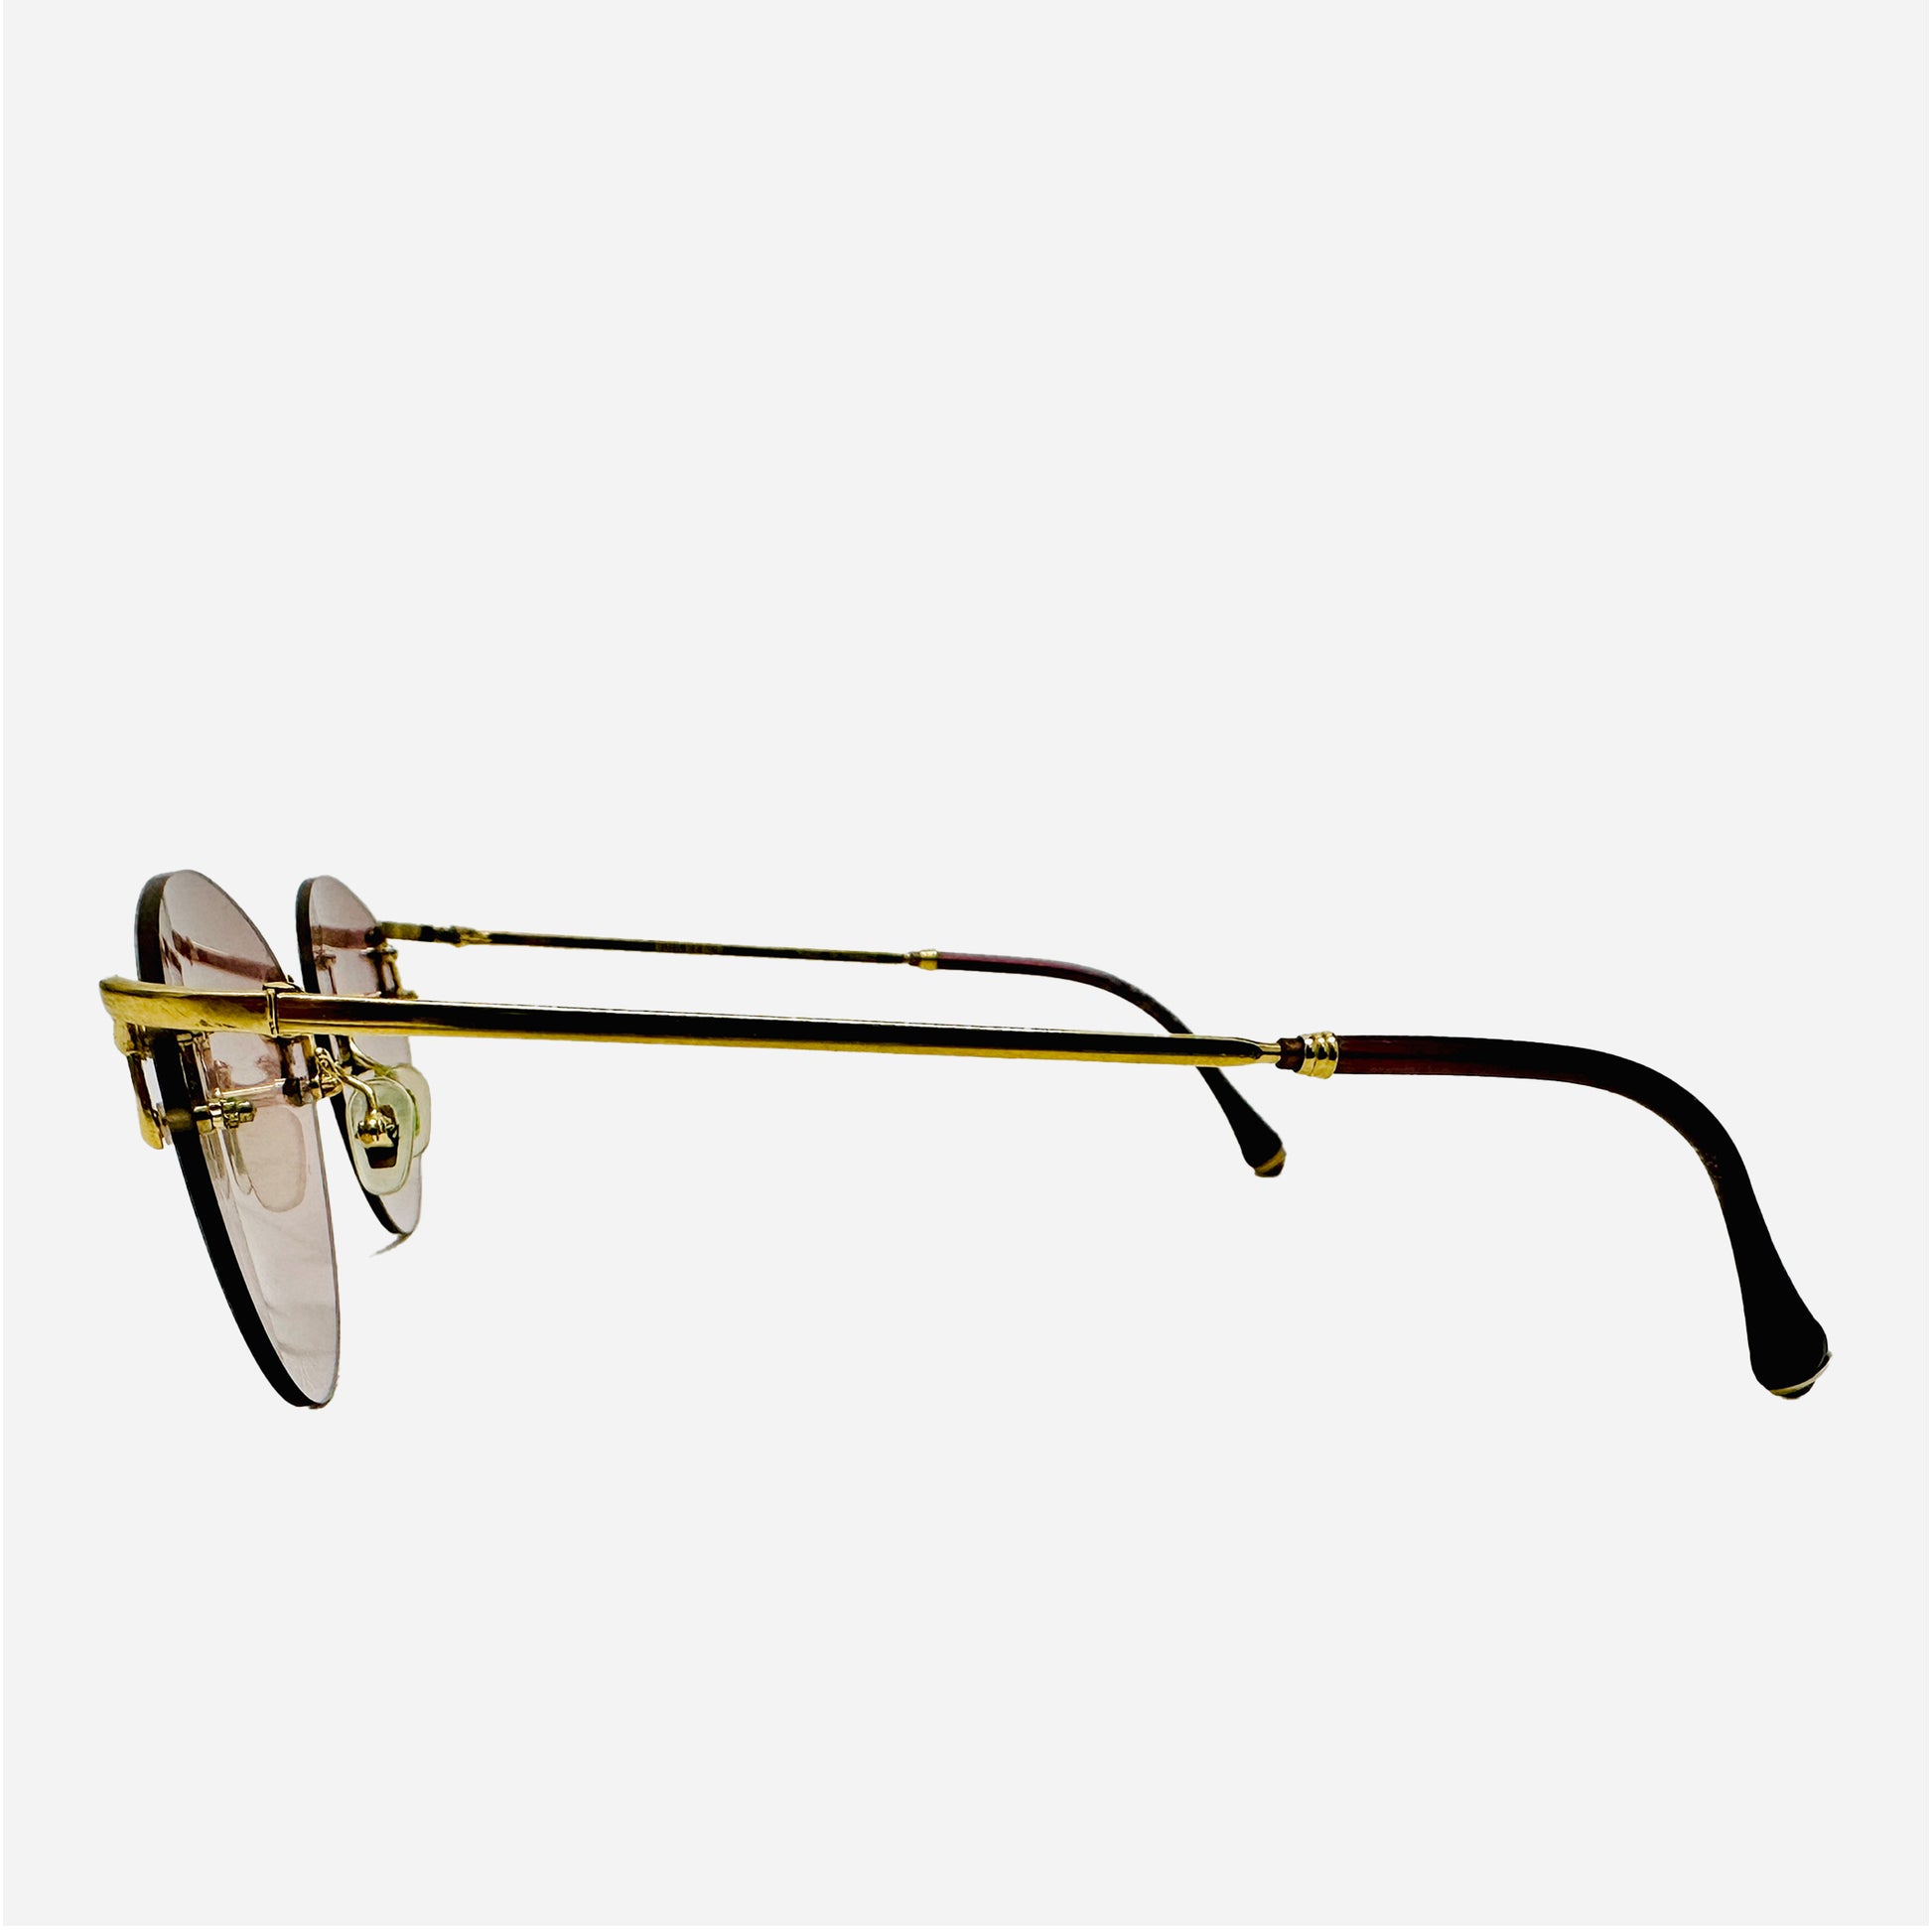 Vintage-Boucheron-Paris-Sonnenbrille-Sunglasses-Lunettes-Gold-04144-rimless-rahmenlos-the-seekers-side